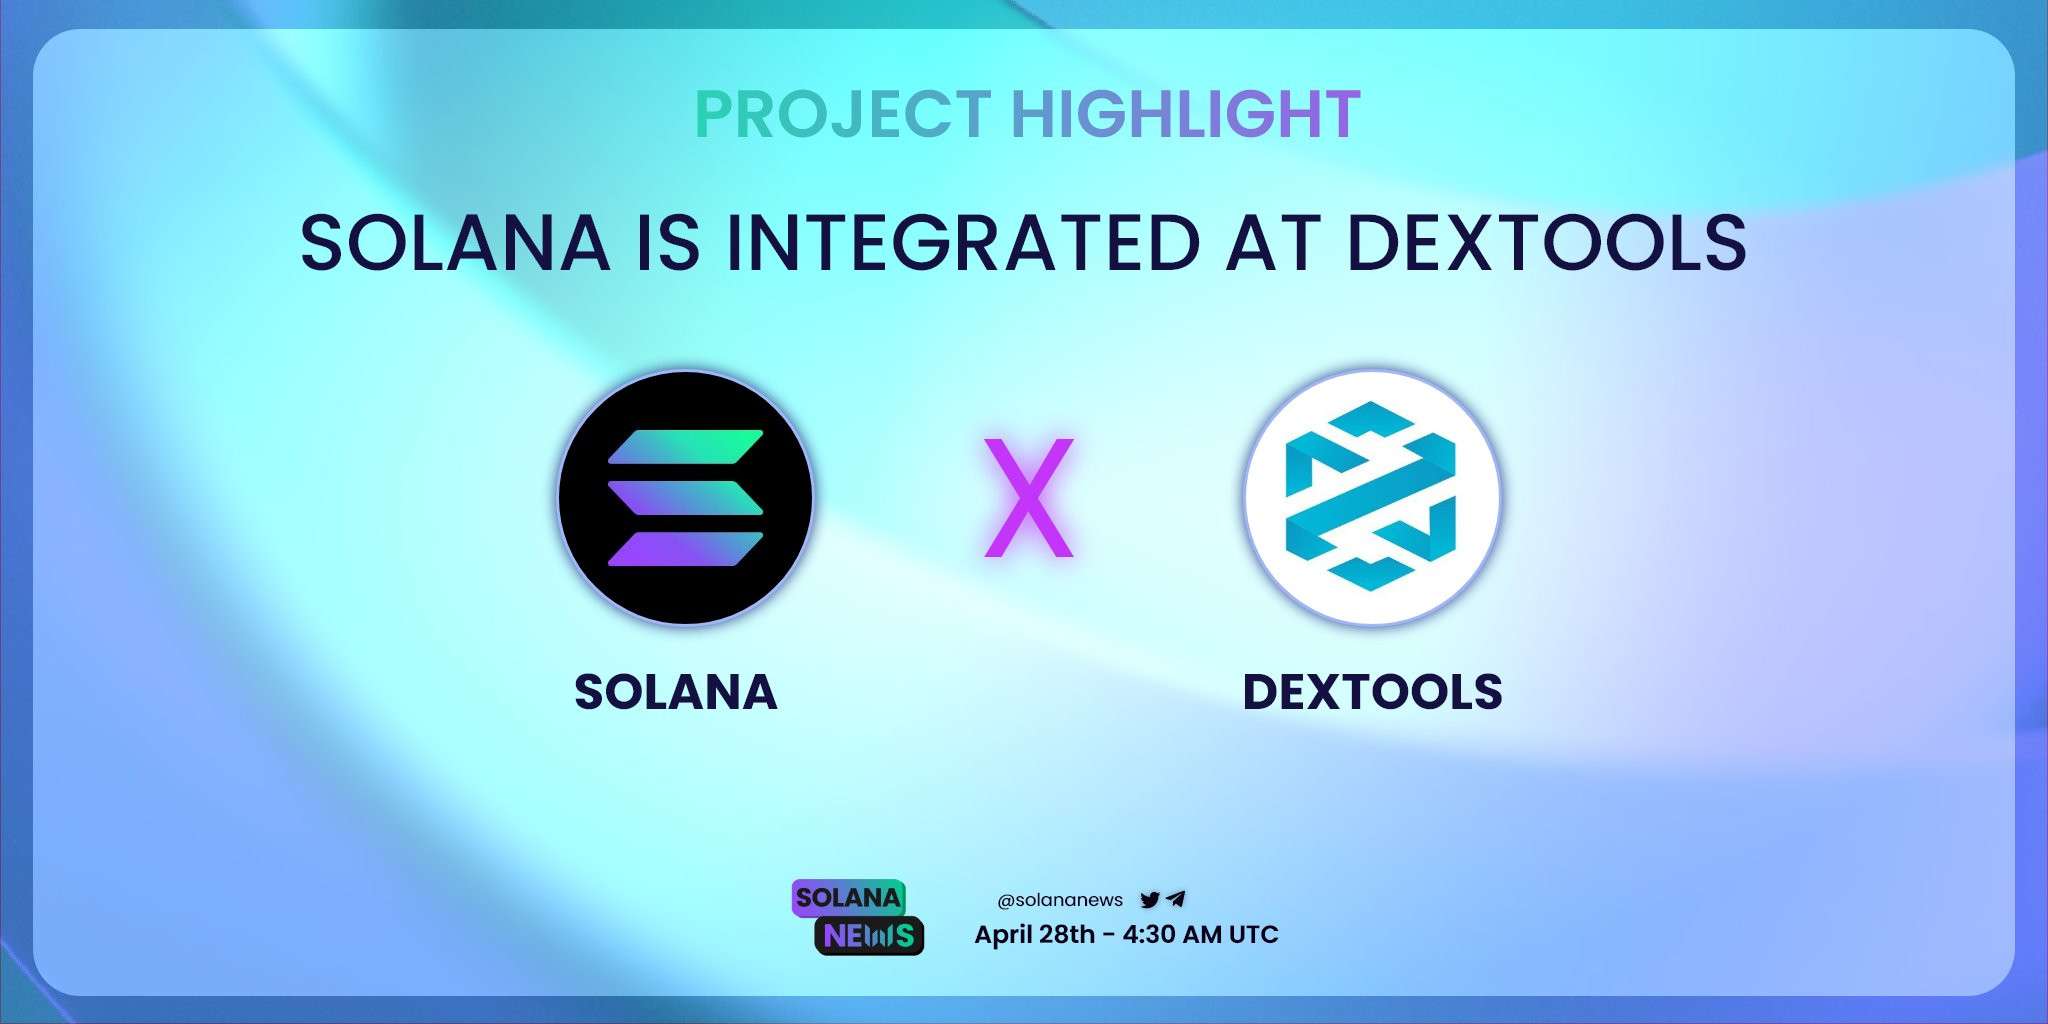 Dextools in partnership with Solana